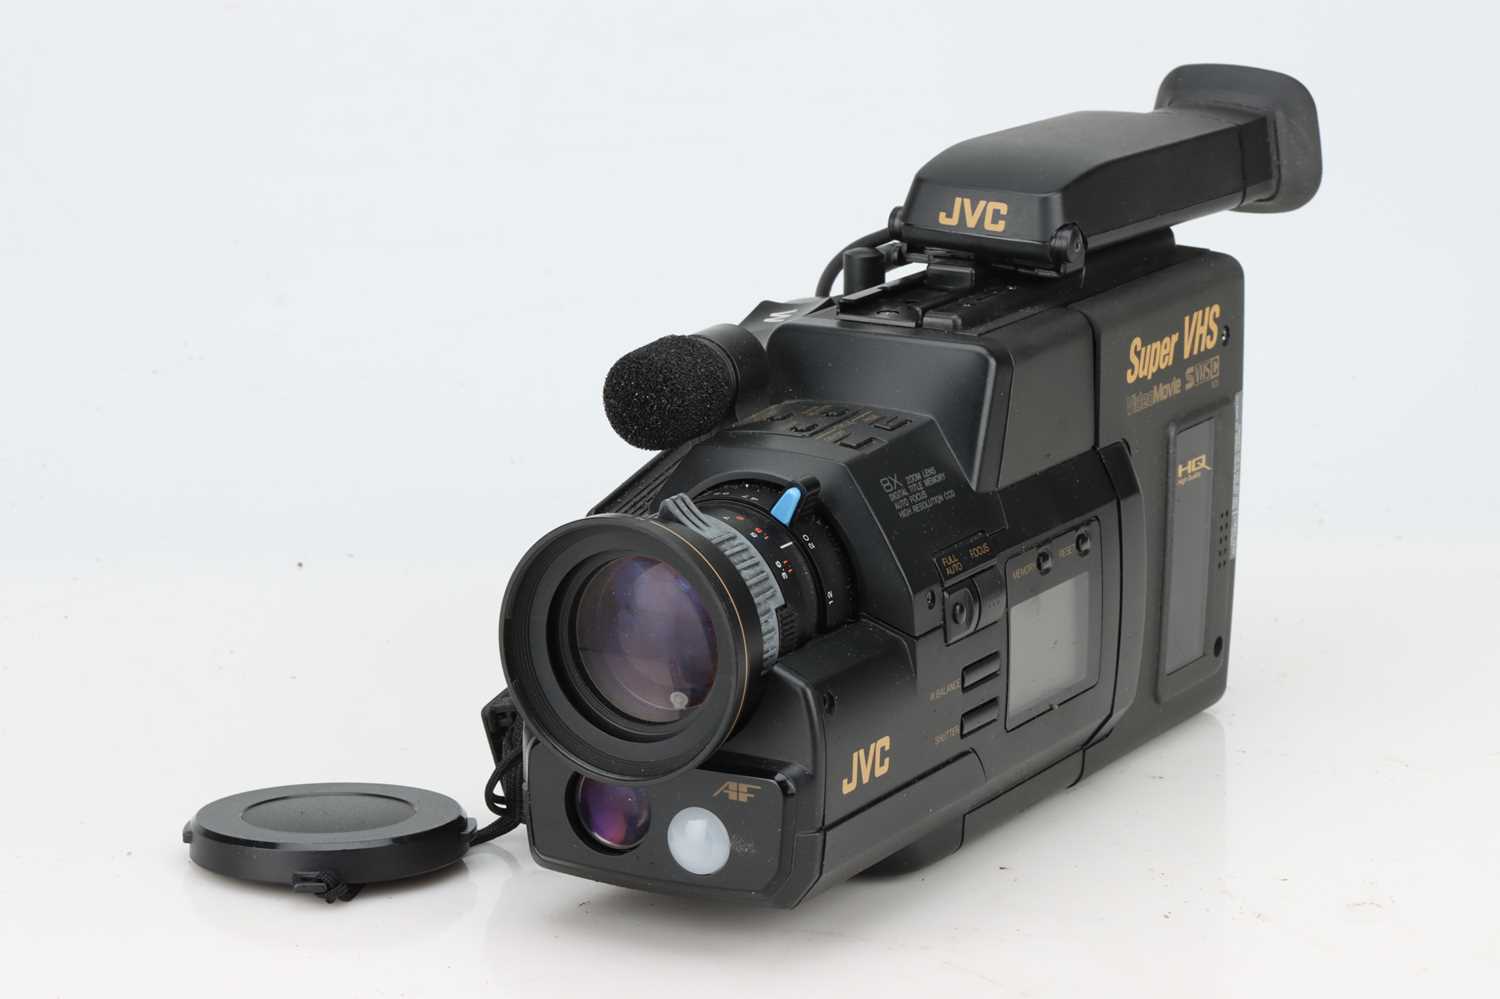 Lot 704 - A JVC GR-S77 Super VHS Camcorder